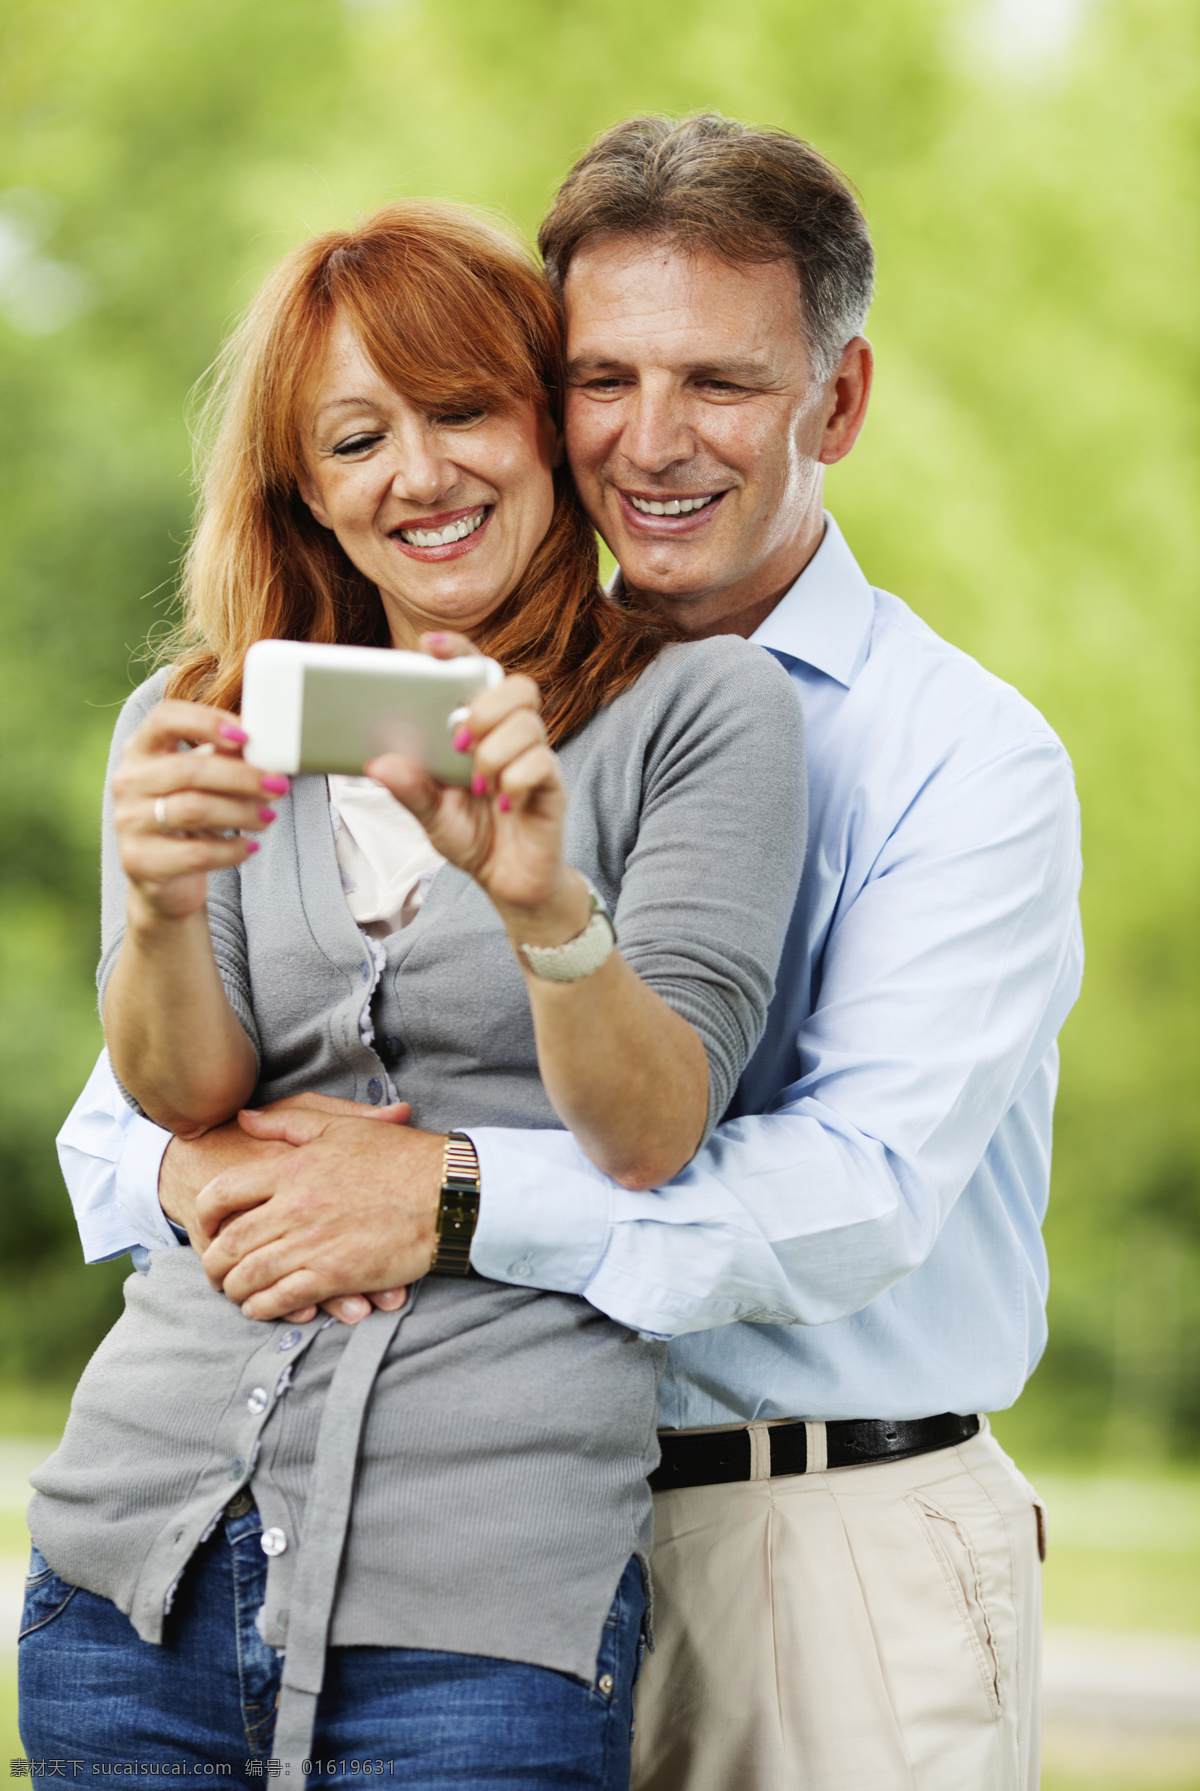 手机 夫妻 情侣 美女 女人 男人 男性 人物摄影 手机电子产品 科技主题 手机图片 现代科技